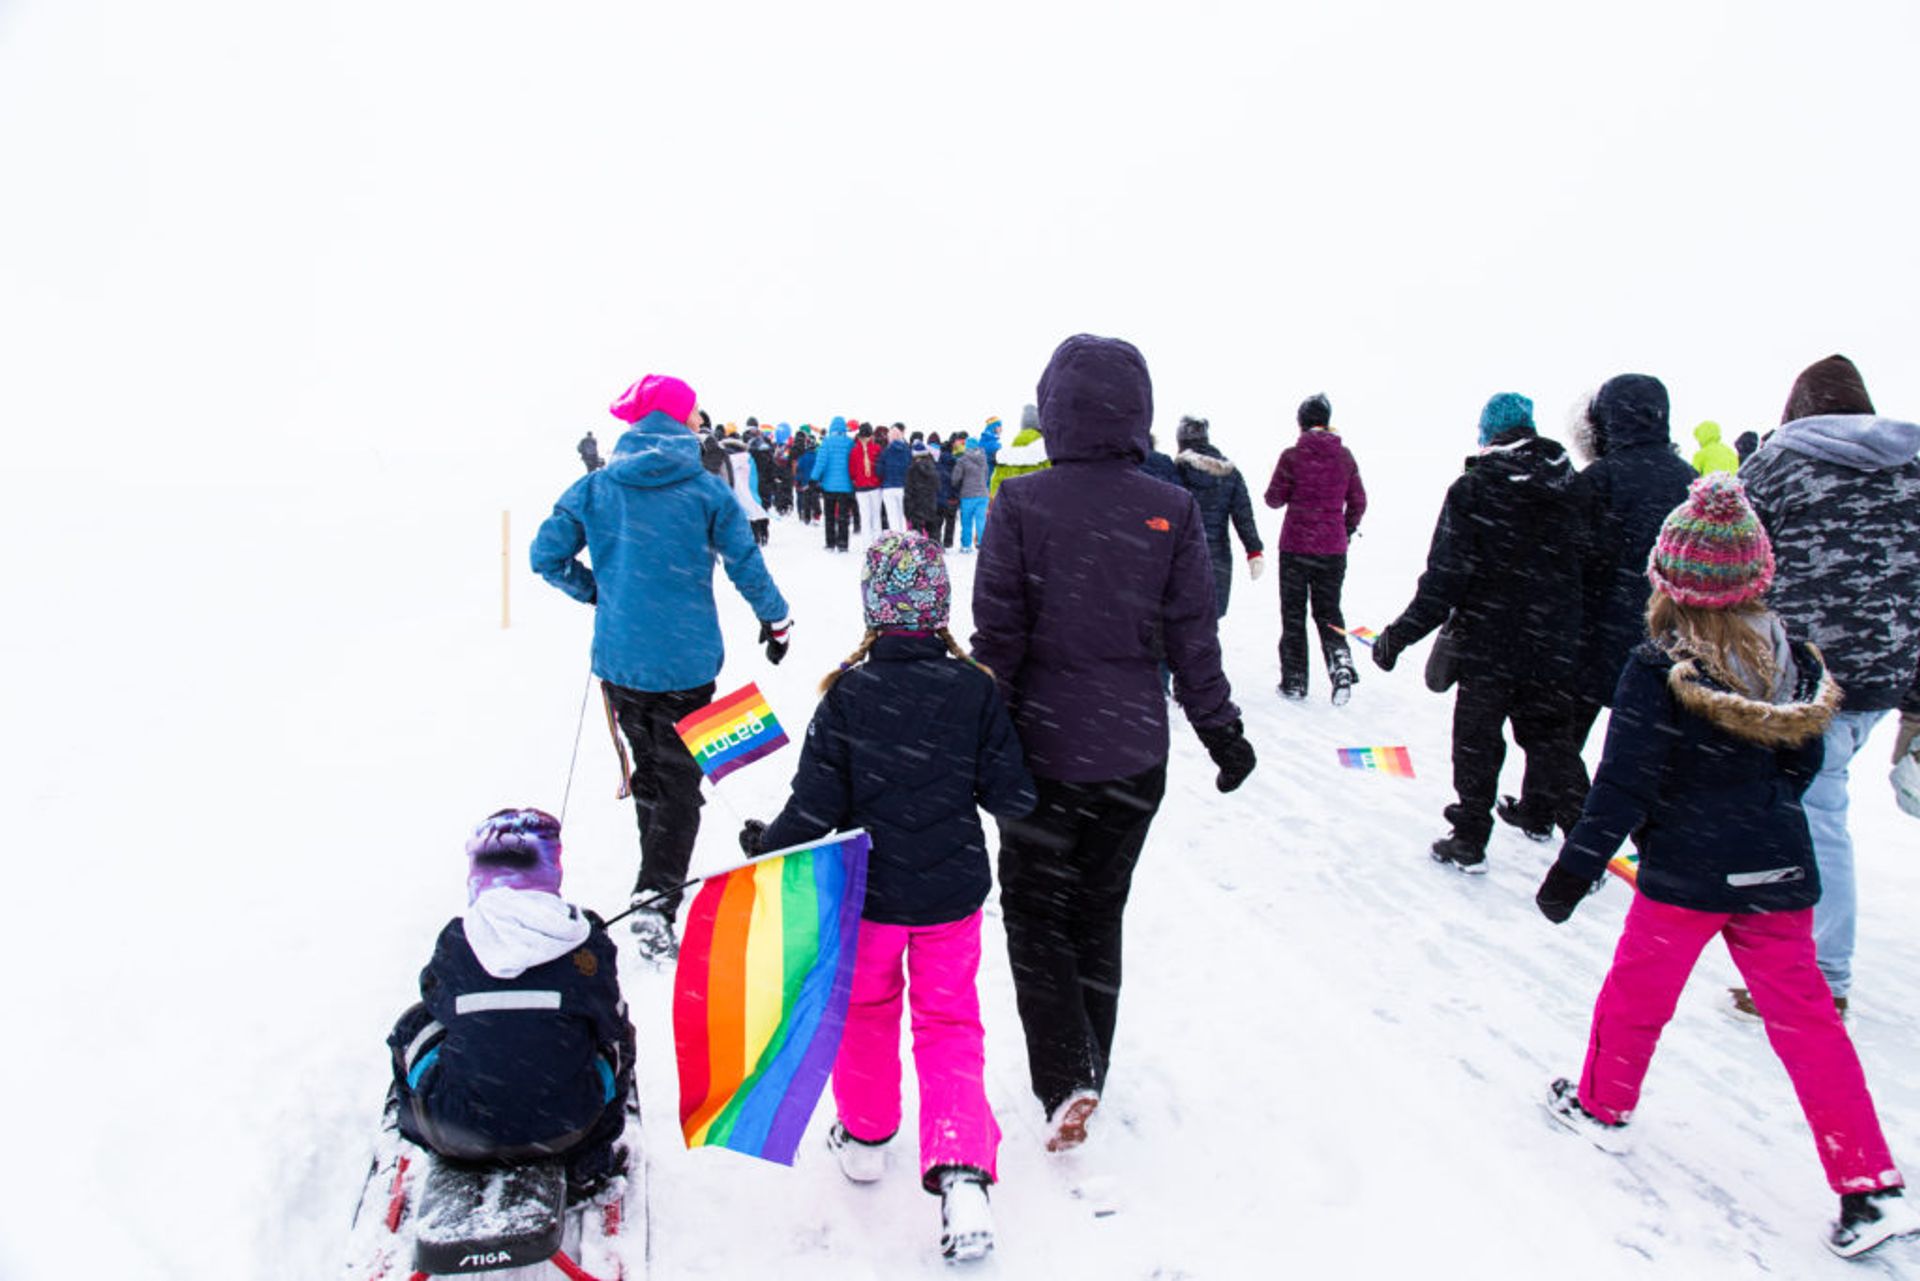 Luleå Pride on Ice